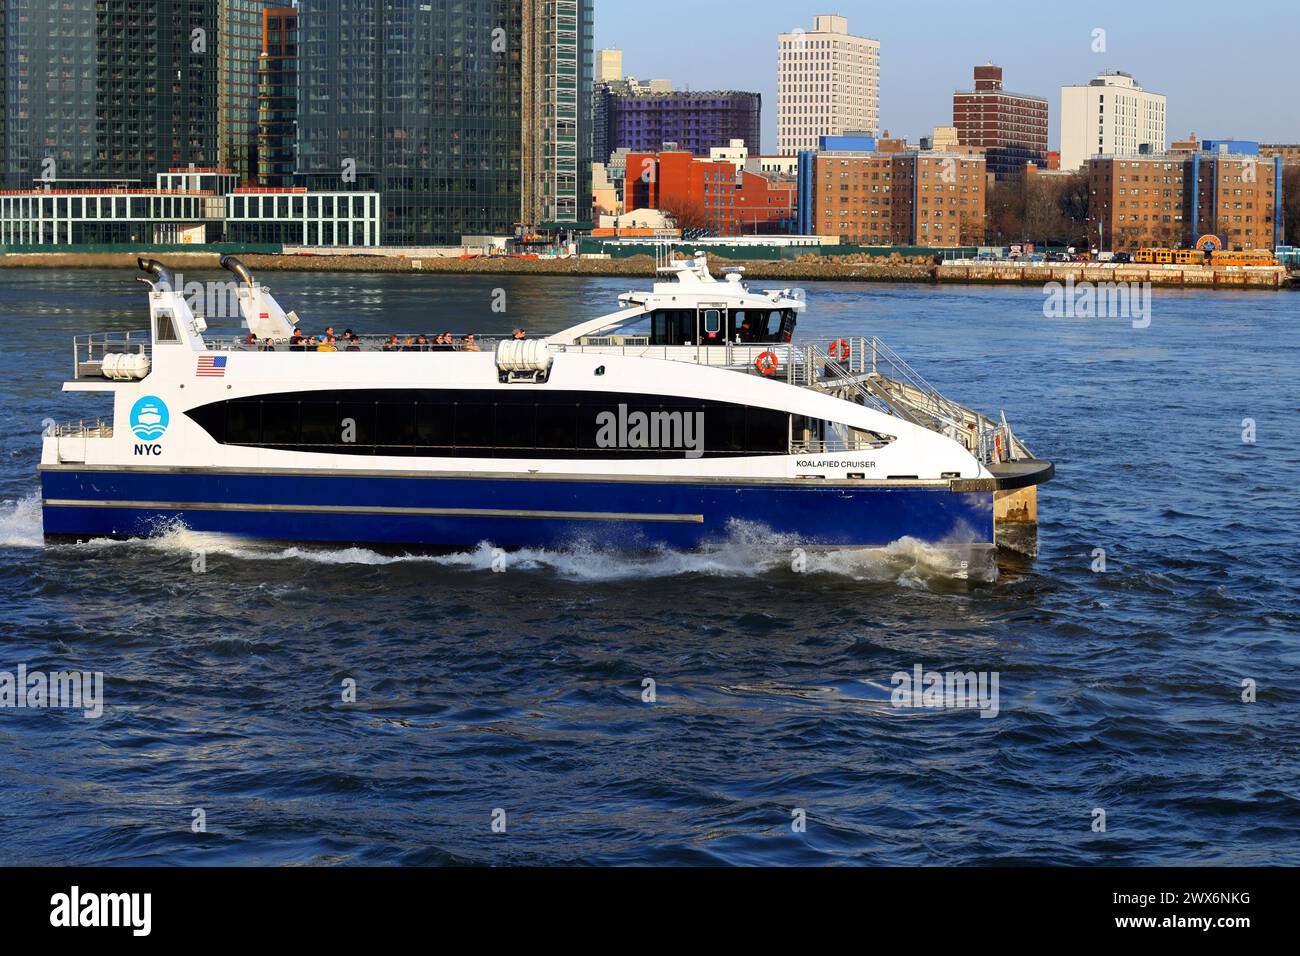 Traghetto di New York Koalafied Cruiser sull'East River, New York City. NYC Ferry è gestito da Hornblower Cruises con sovvenzioni dalla città. Foto Stock